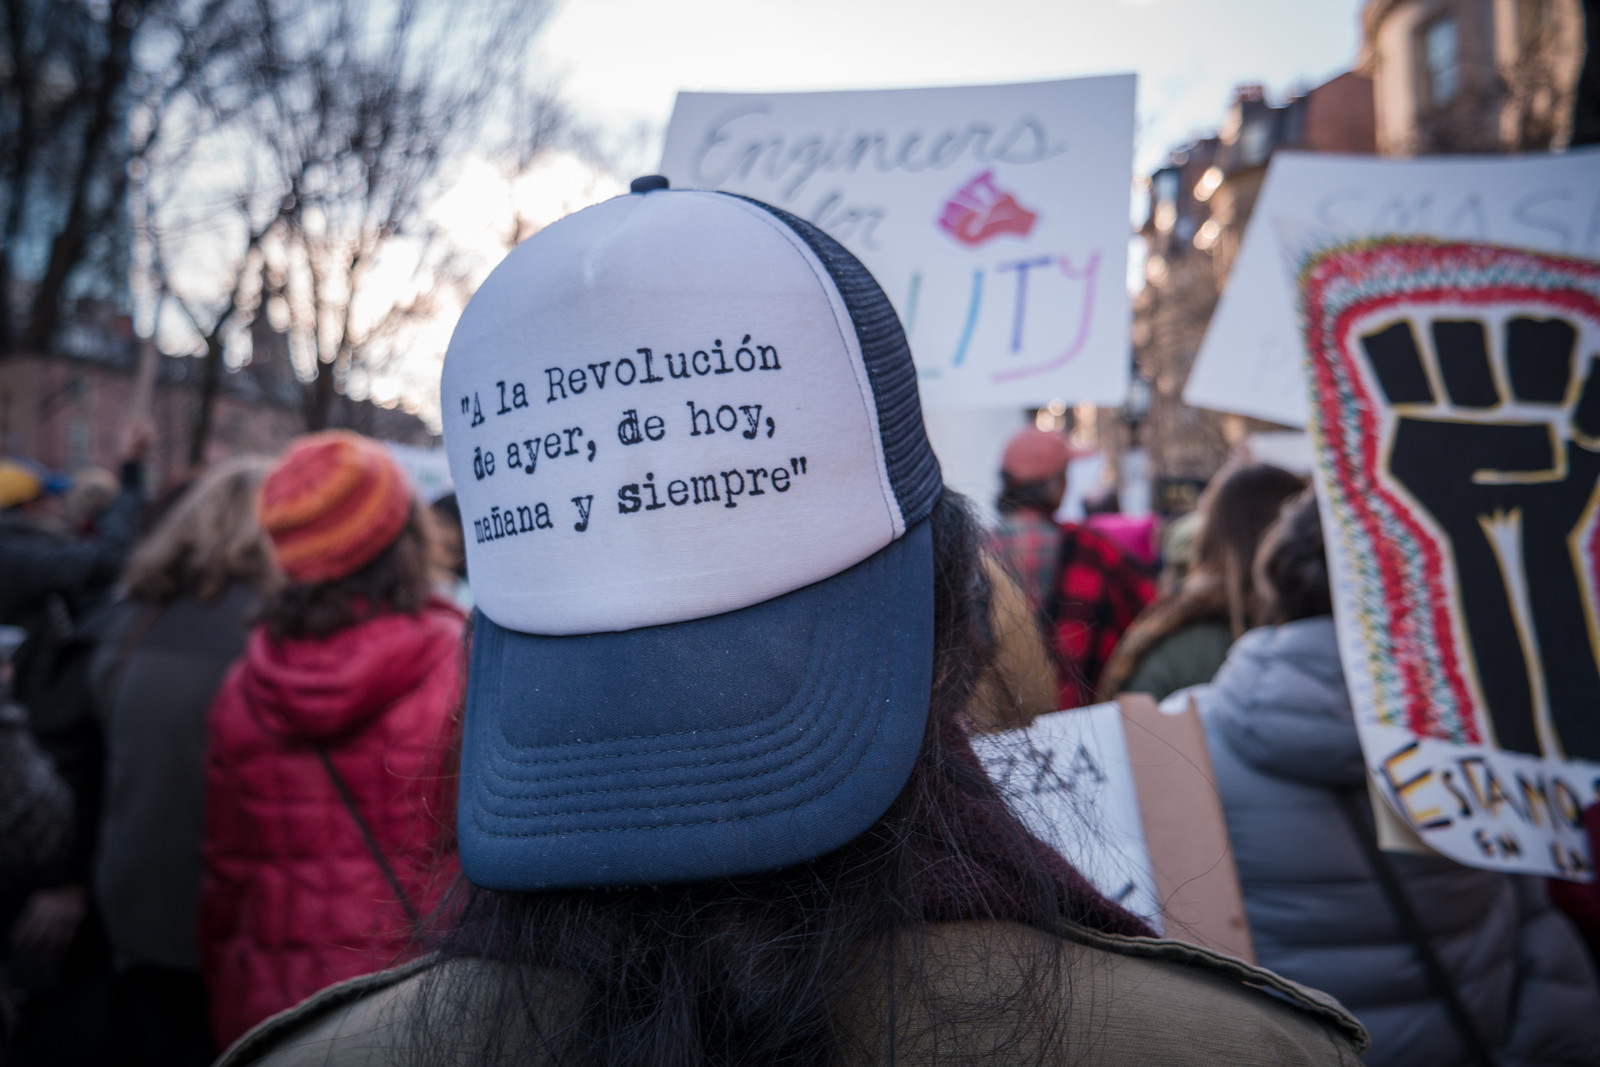 Women's March Boston